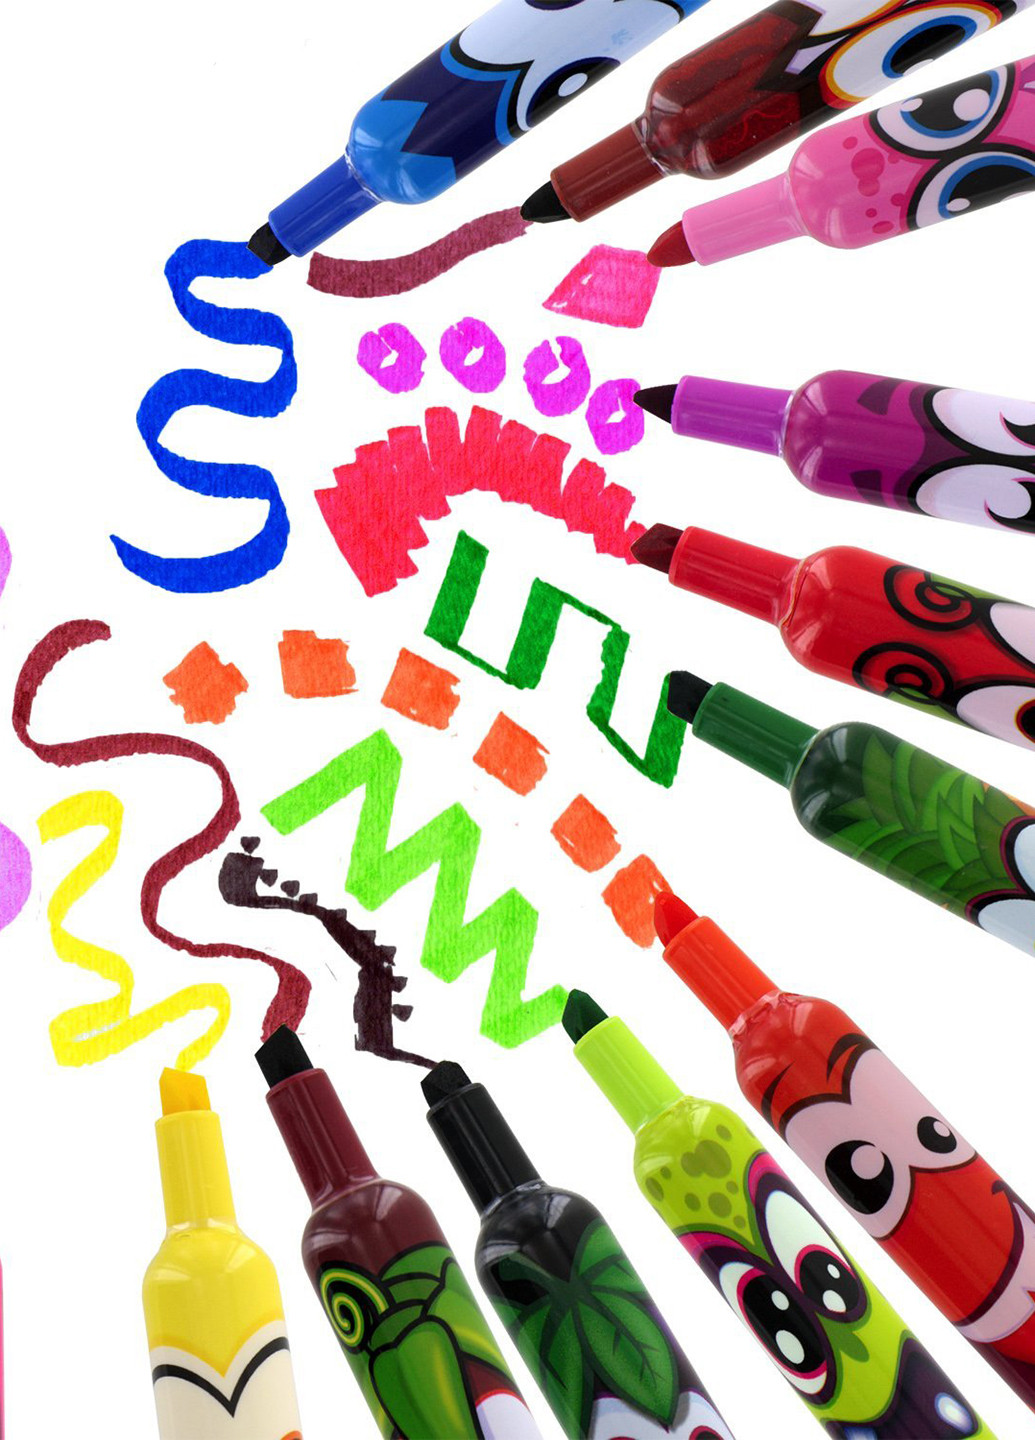 Набор ароматных маркеров для рисования - ШТРИХ (12 цветов) Scentos (70857363)